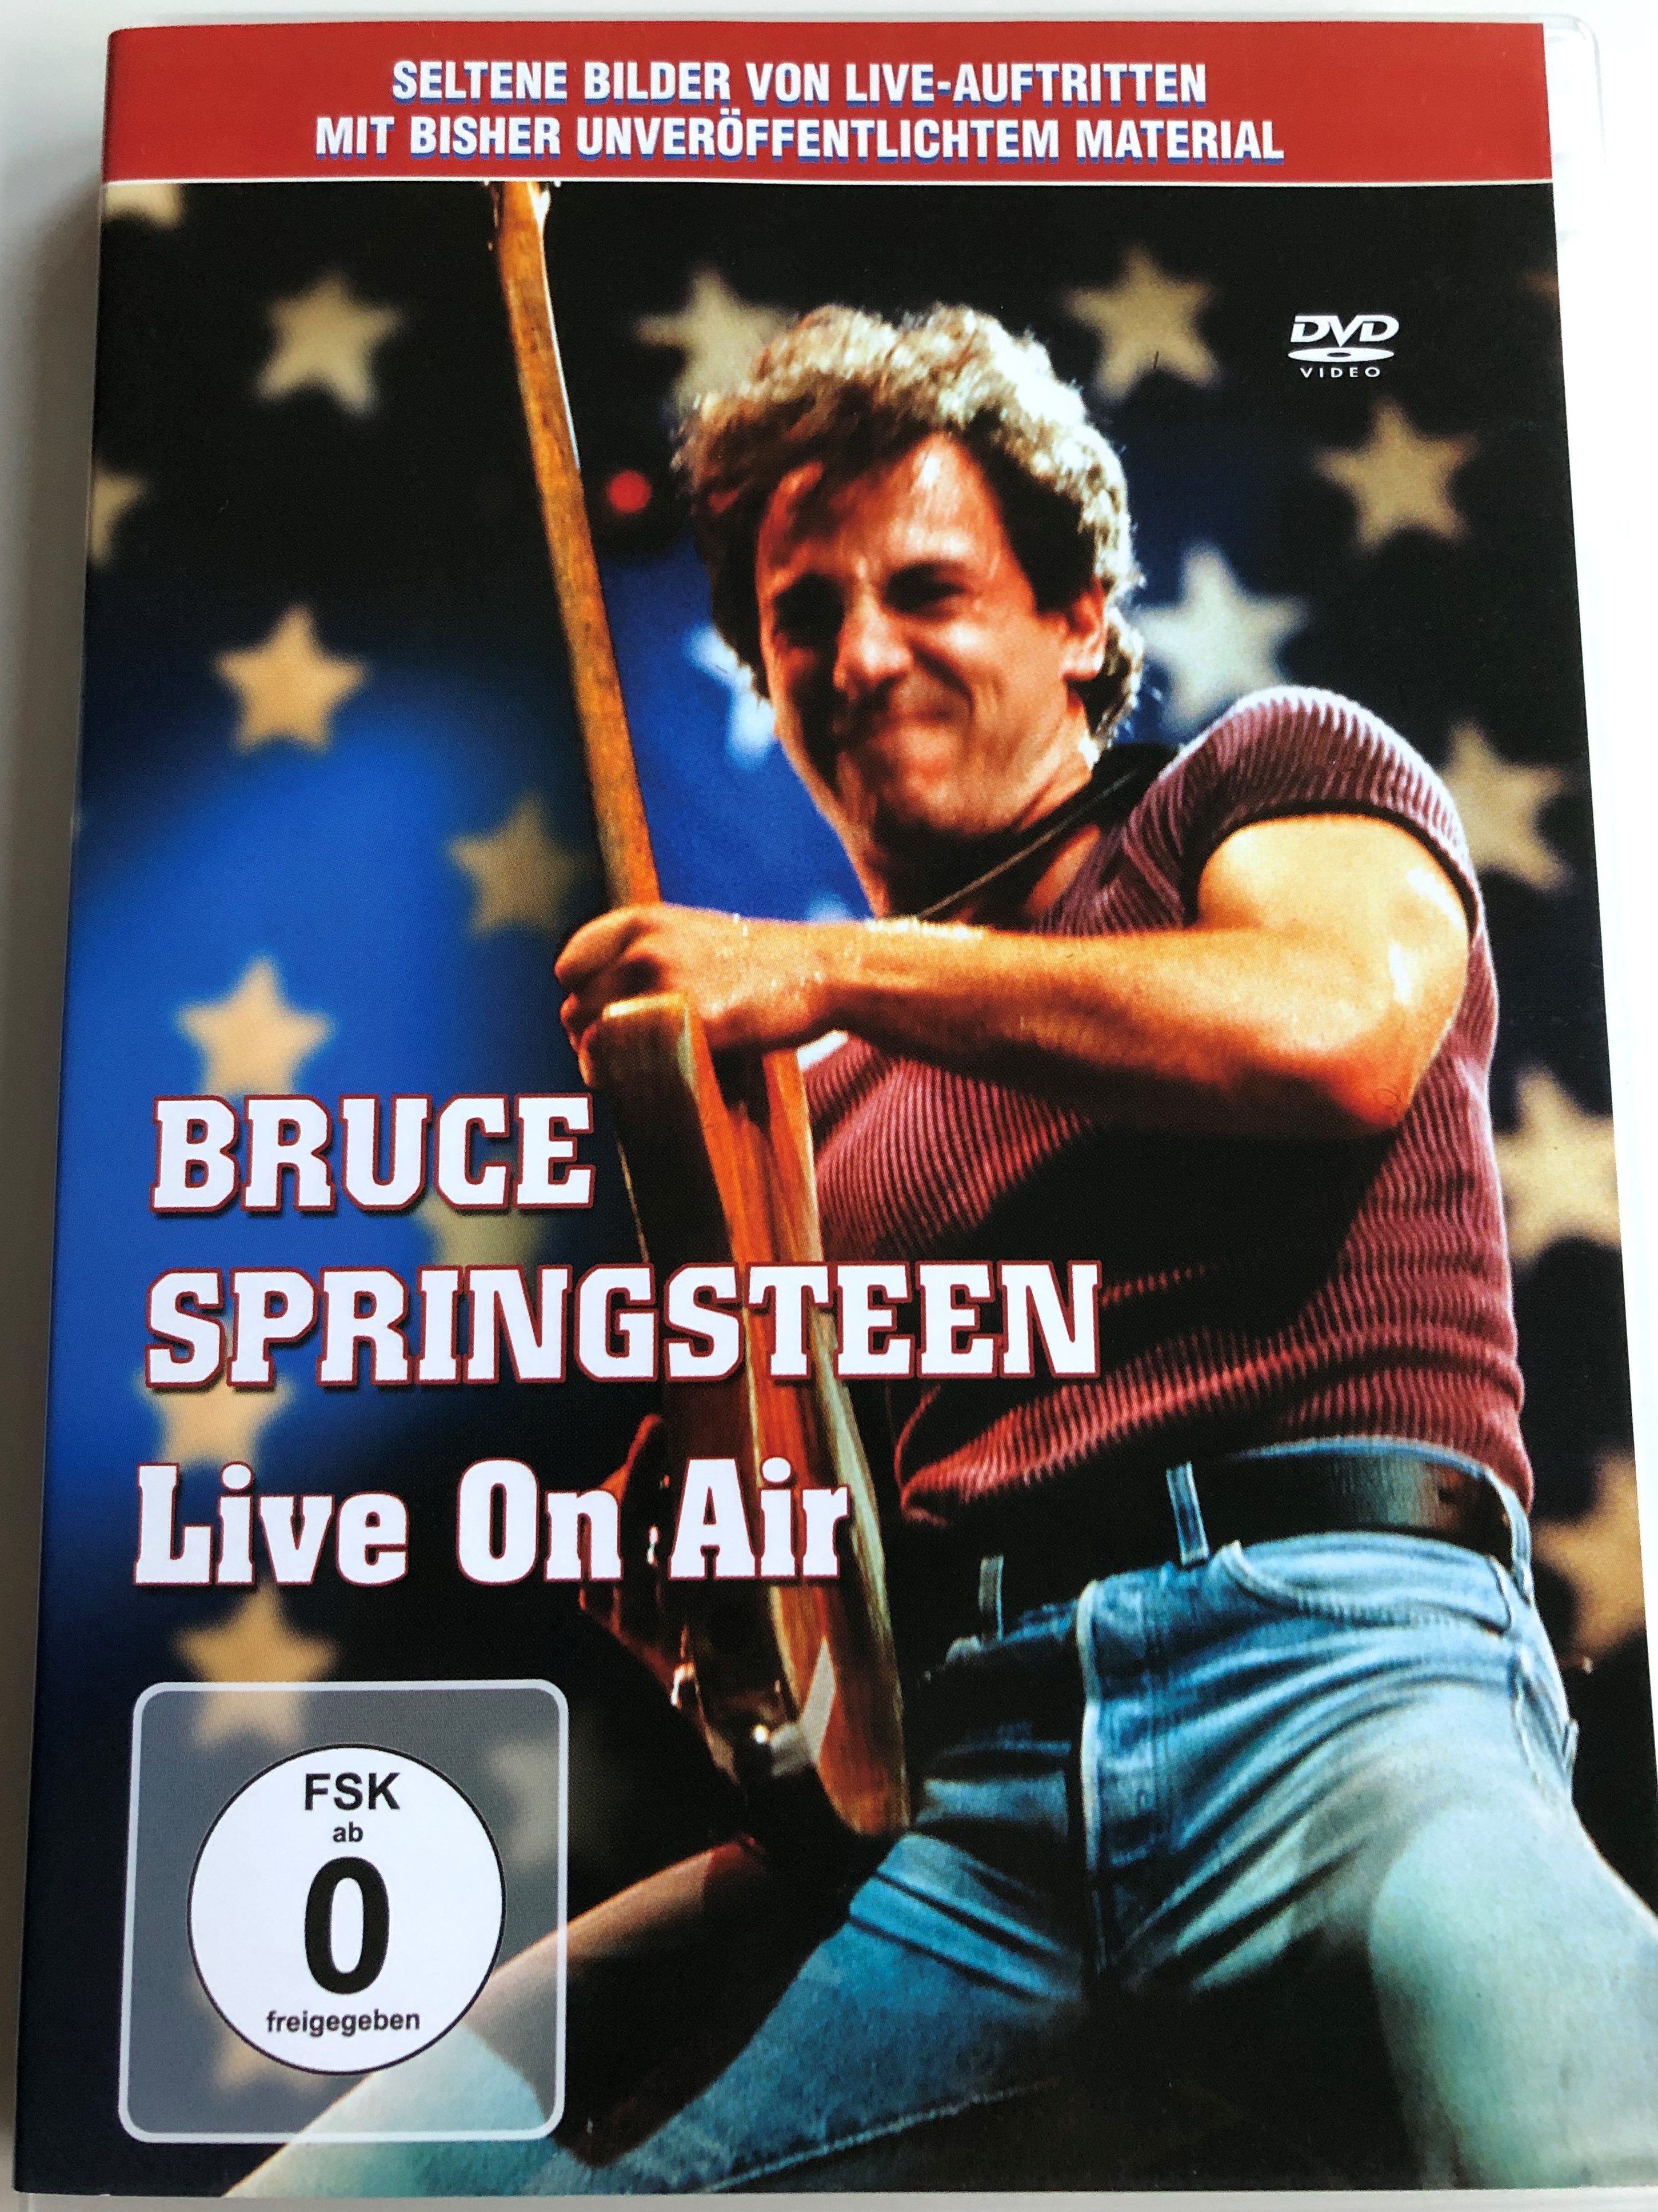 bruce-springsteen-live-on-air-dvd-2005-seltene-bilder-von-live-auftritten-1.jpg